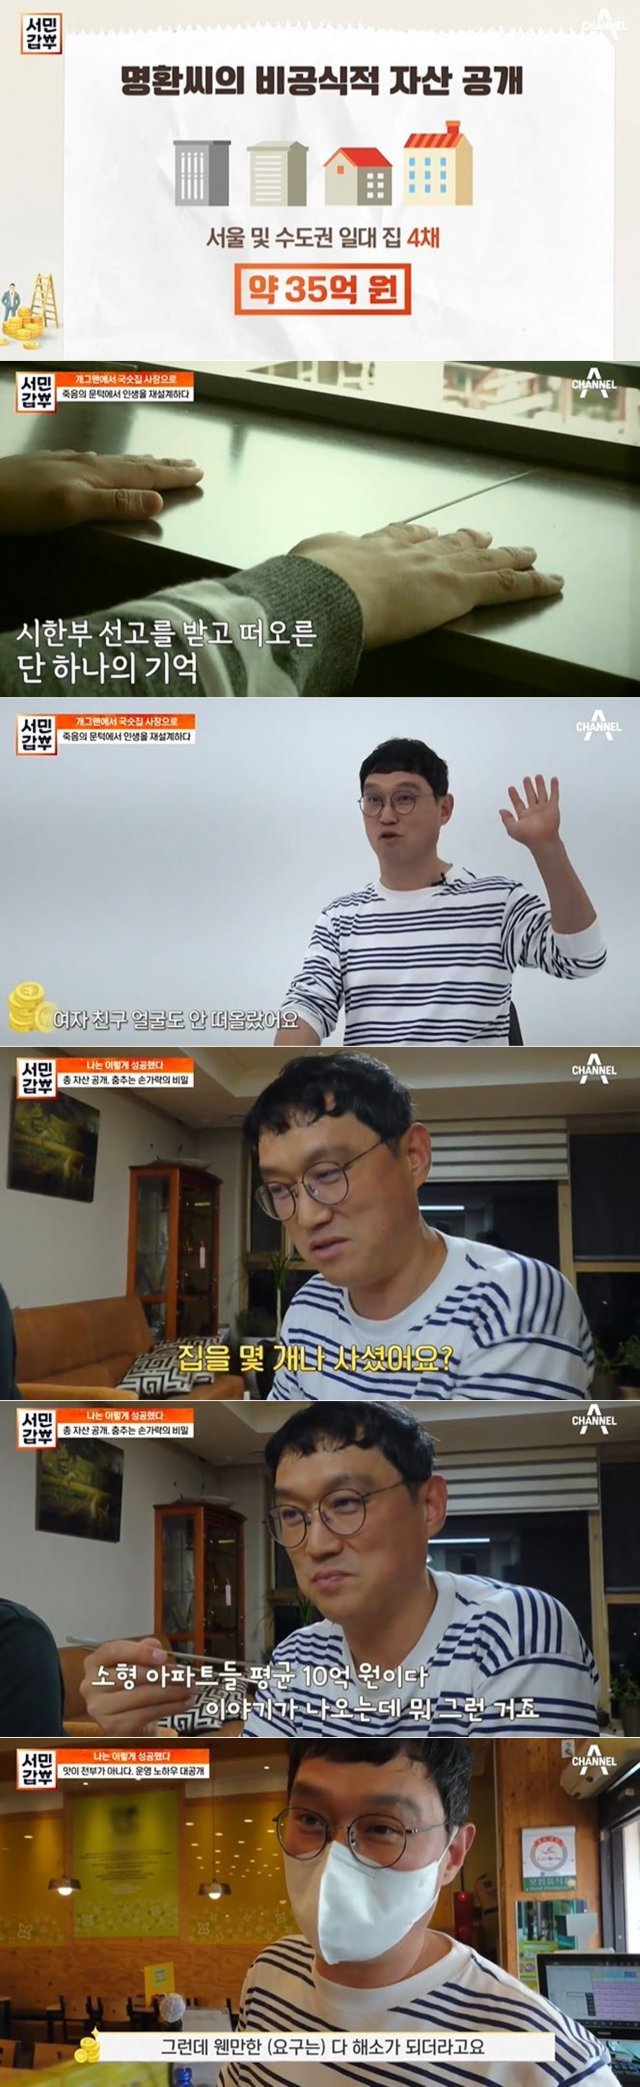 채널A ‘서민갑부’ 방송 화면 갈무리